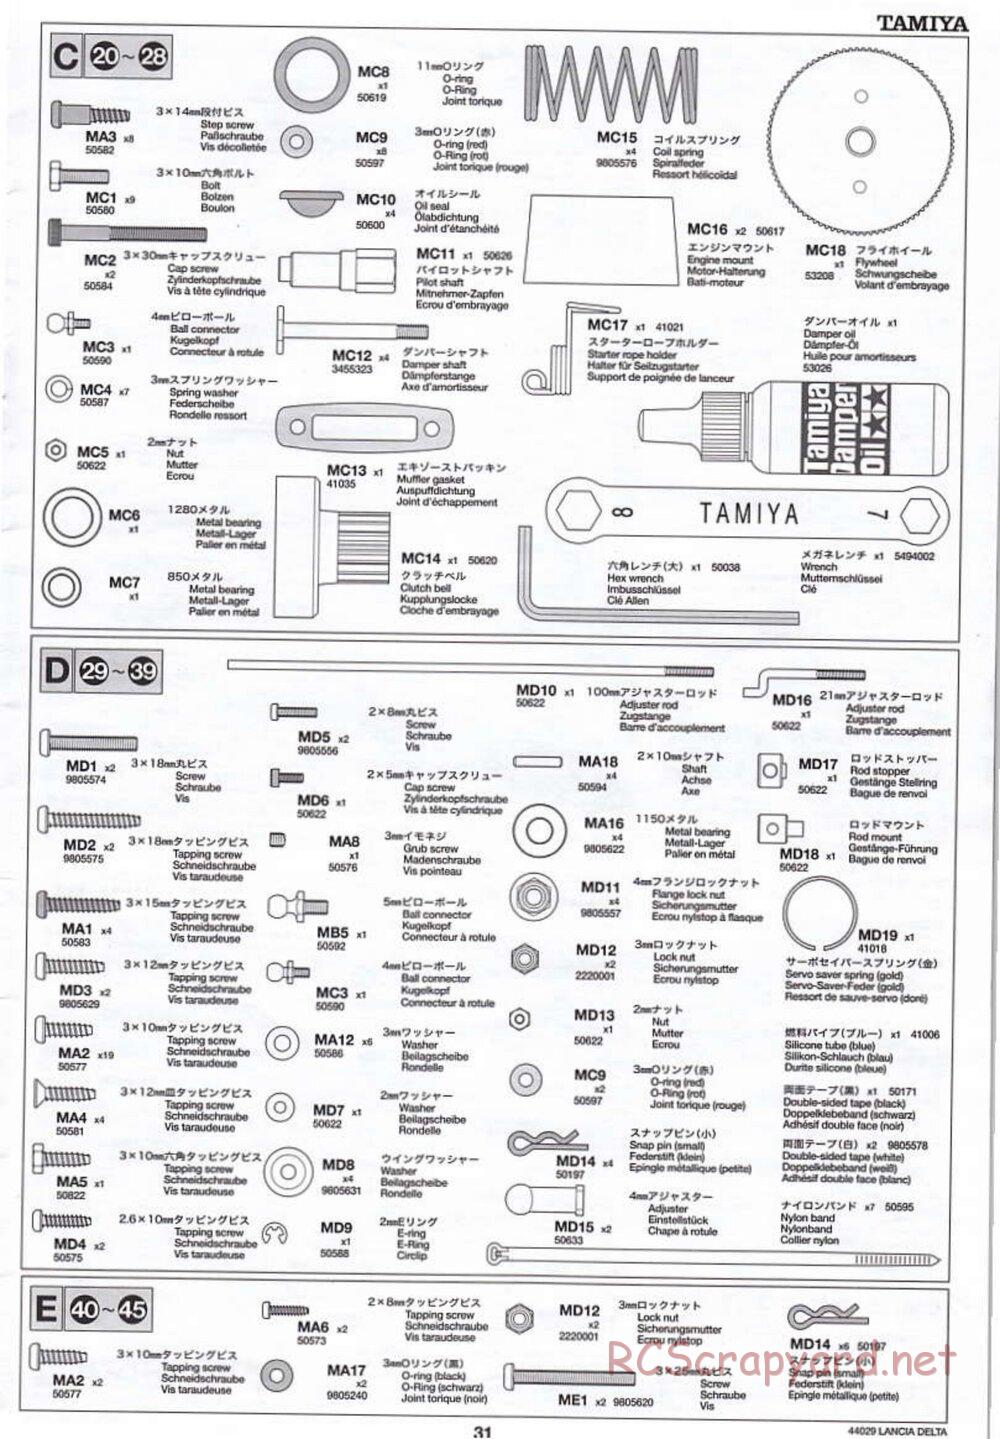 Tamiya - Lancia Delta HF Integrale - TG10 Mk.1 Chassis - Manual - Page 31